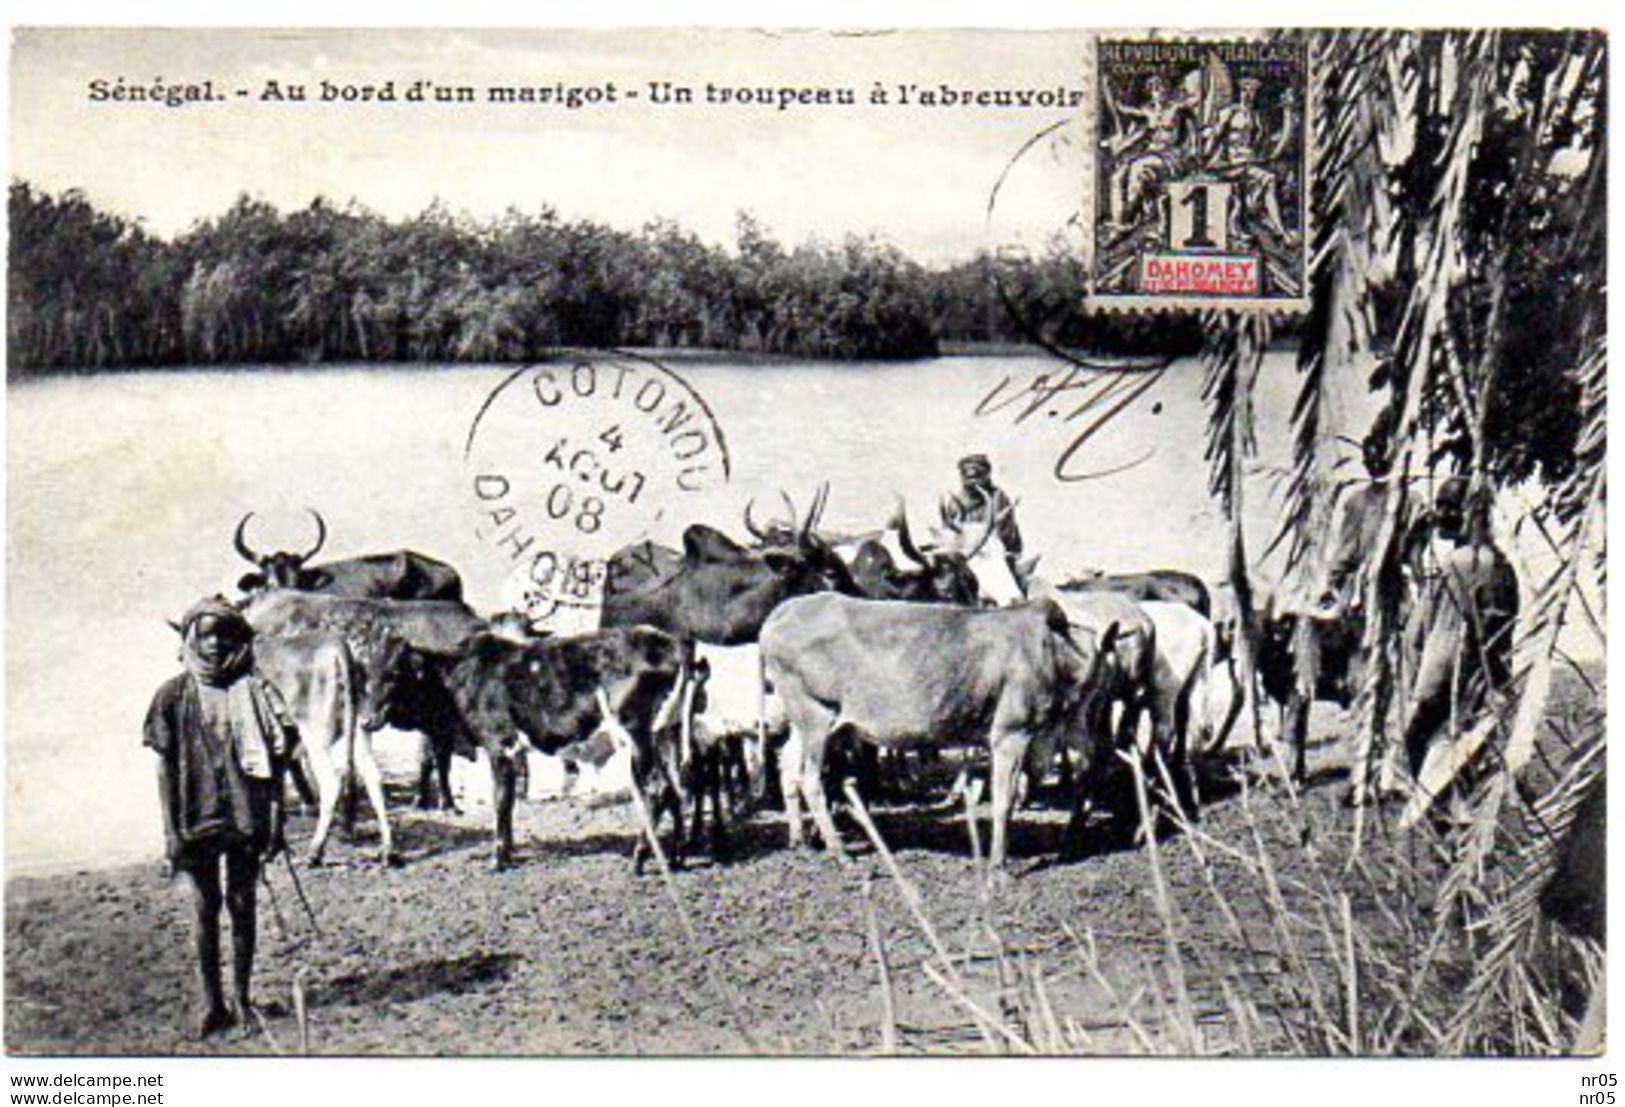 SENEGAL - Au Bord D'un Marigot - Un Troupeau A L'abreuvoir ( Timbre Dahomey YT 6 Oblitere COTONOU - DAHOMEY 1908 ) - Dahome